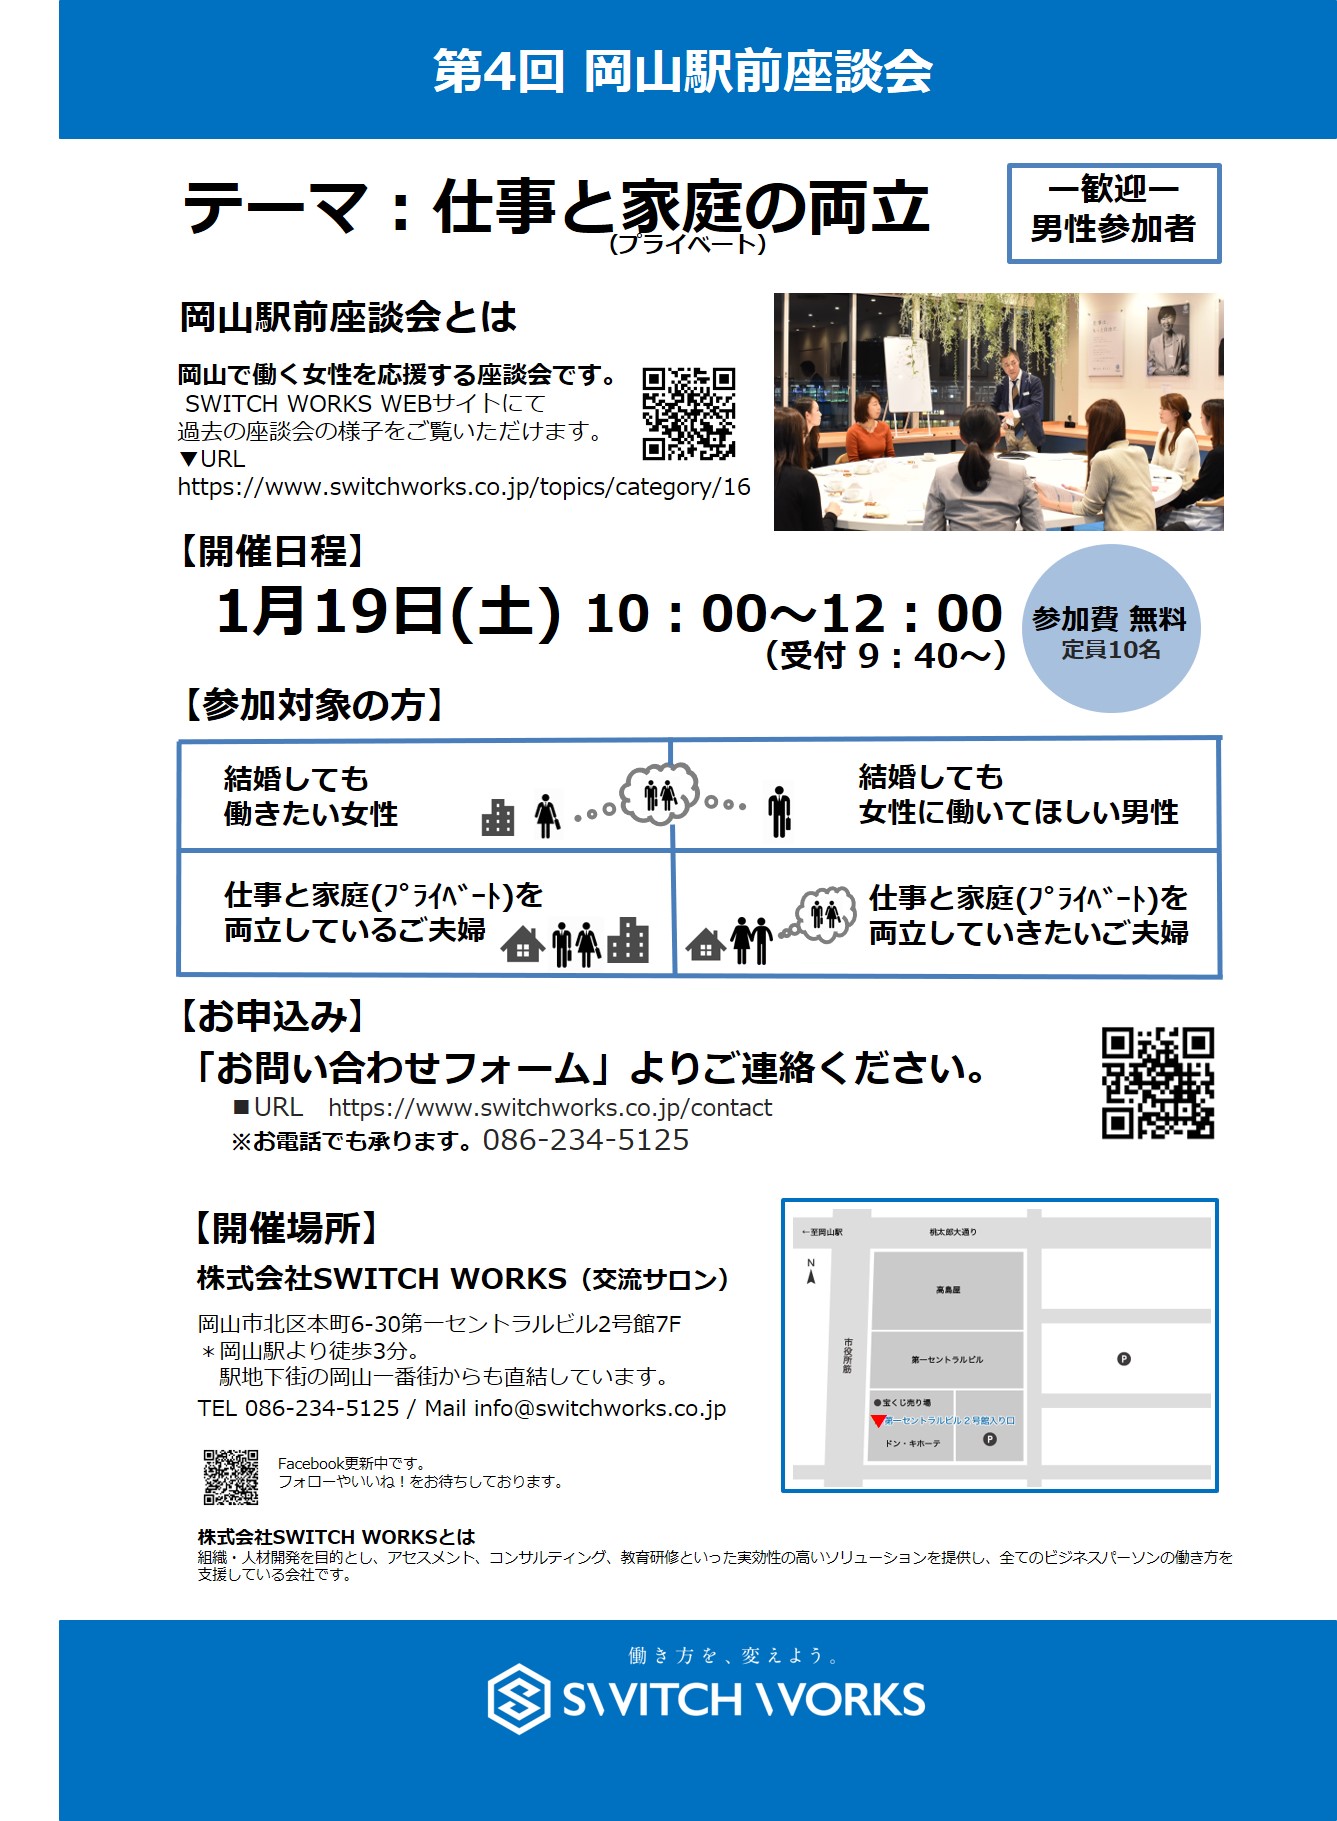 第4回 岡山駅前座談会 参加者募集のお知らせ さまくるおかやま 岡山の情報をひとまとめに Summacle Okayama